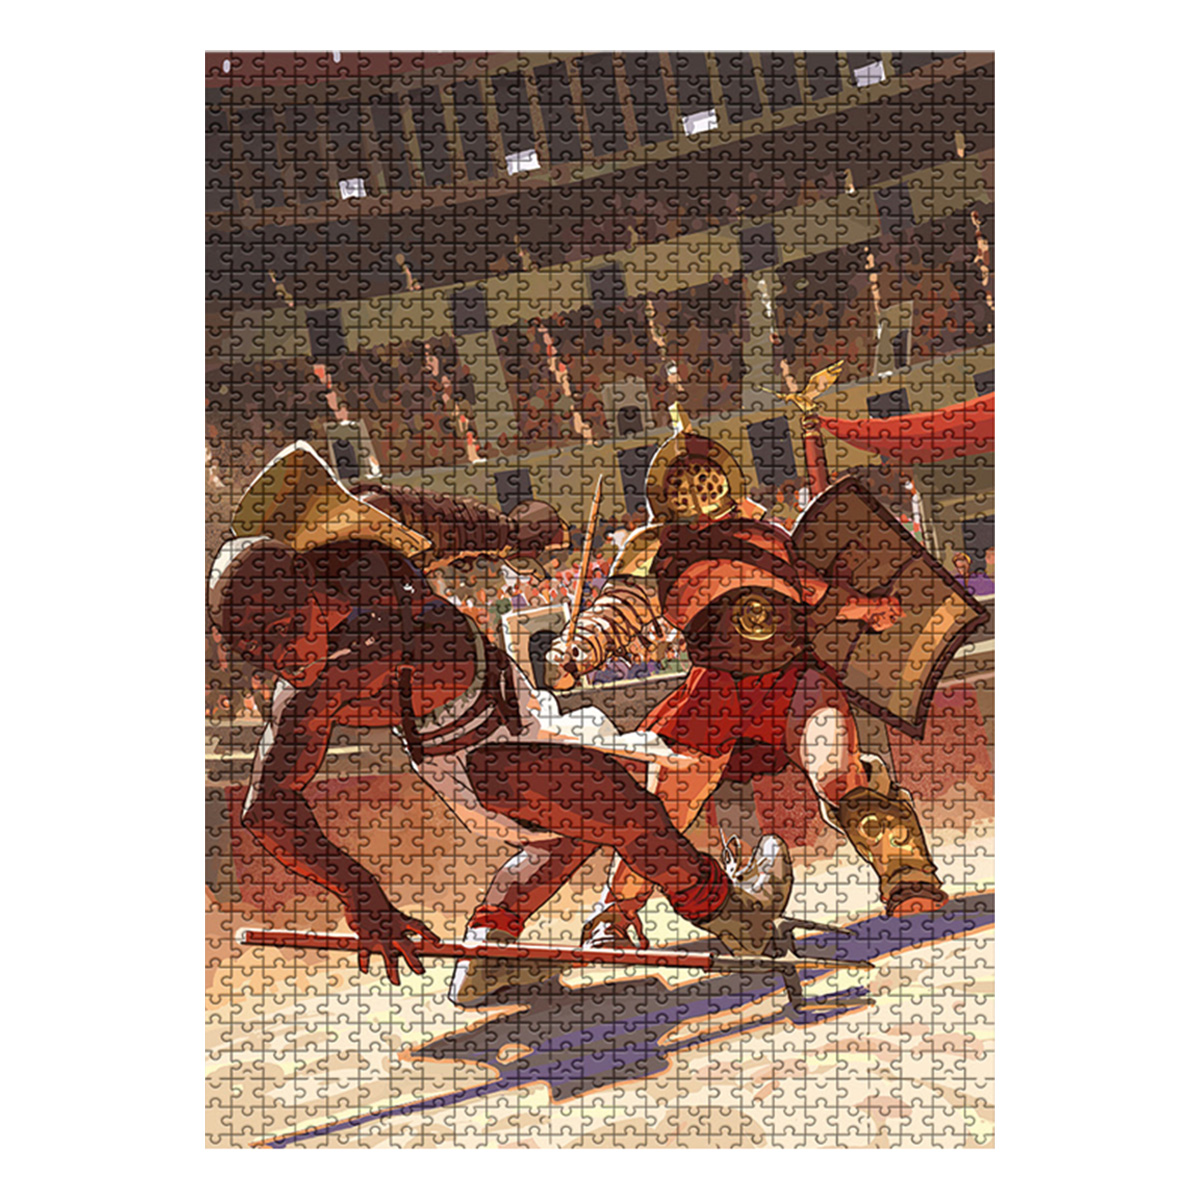 Humankind Puzzle "Roman Empire" Image 2